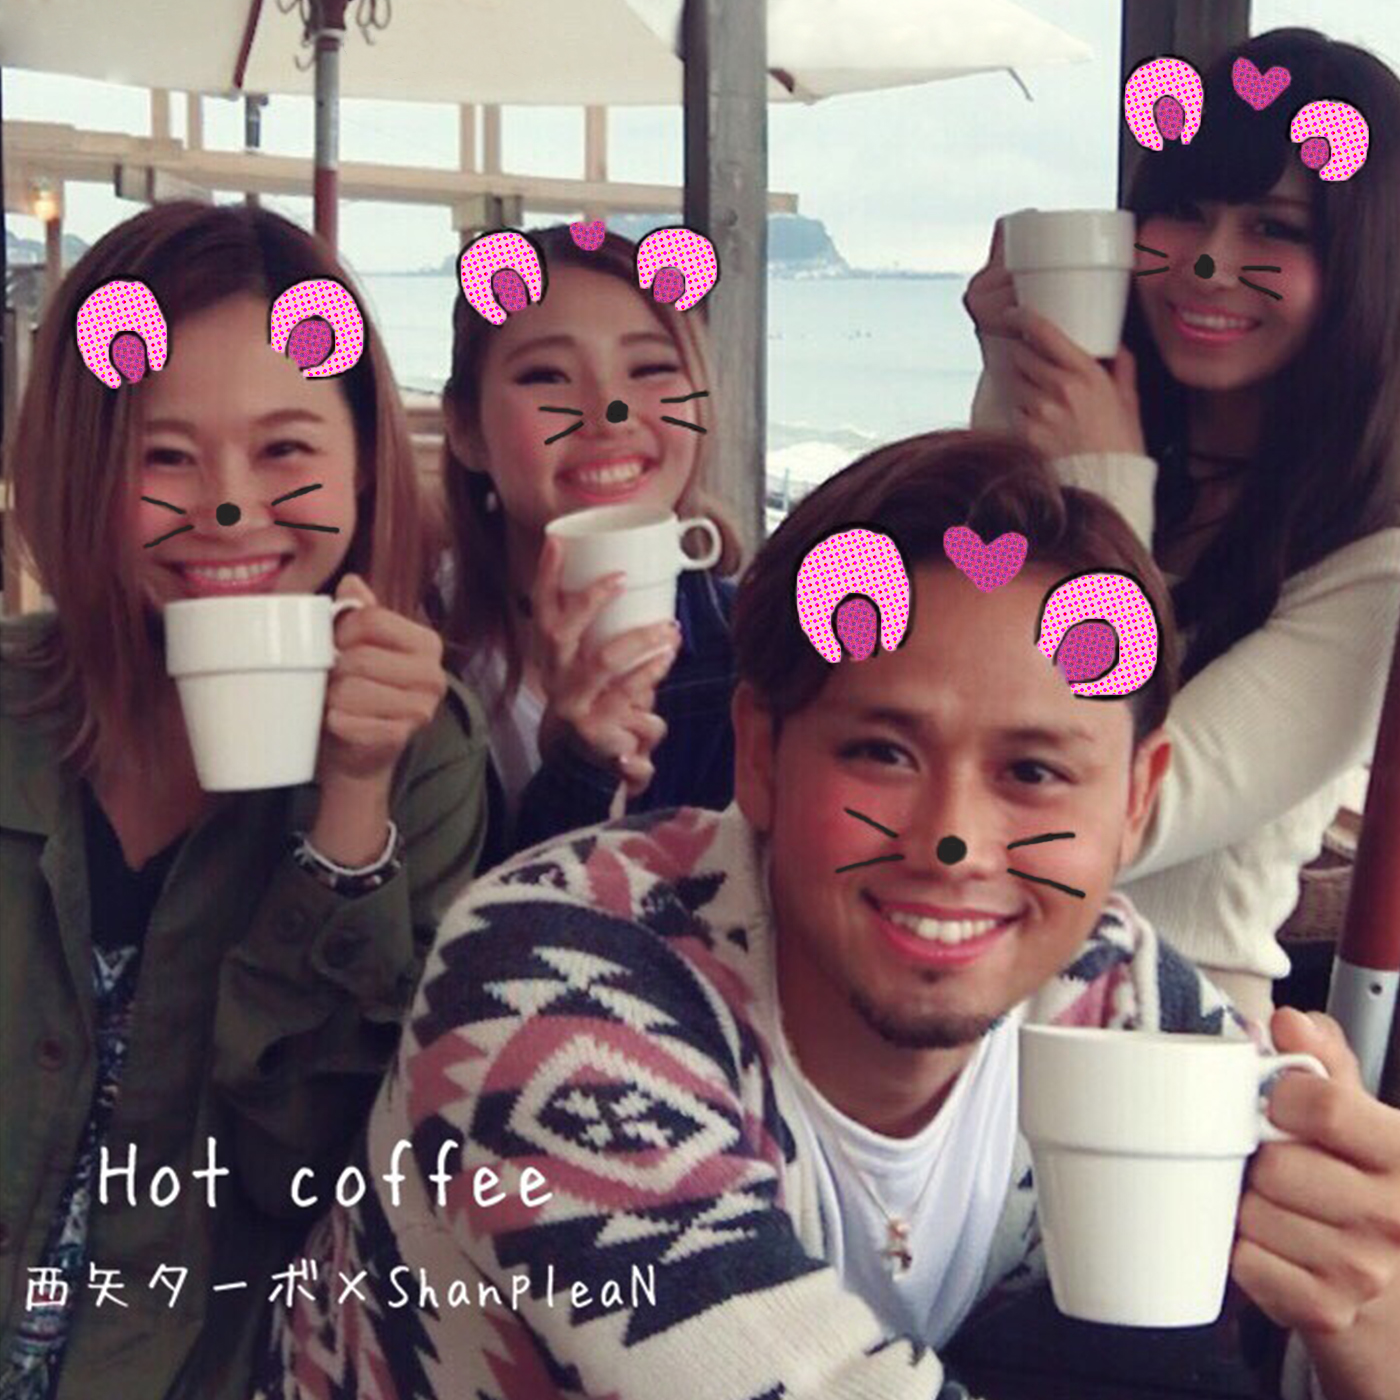 hot coffe ホットコーヒー 西矢ターボ ShanpleaN  ジャケット画像